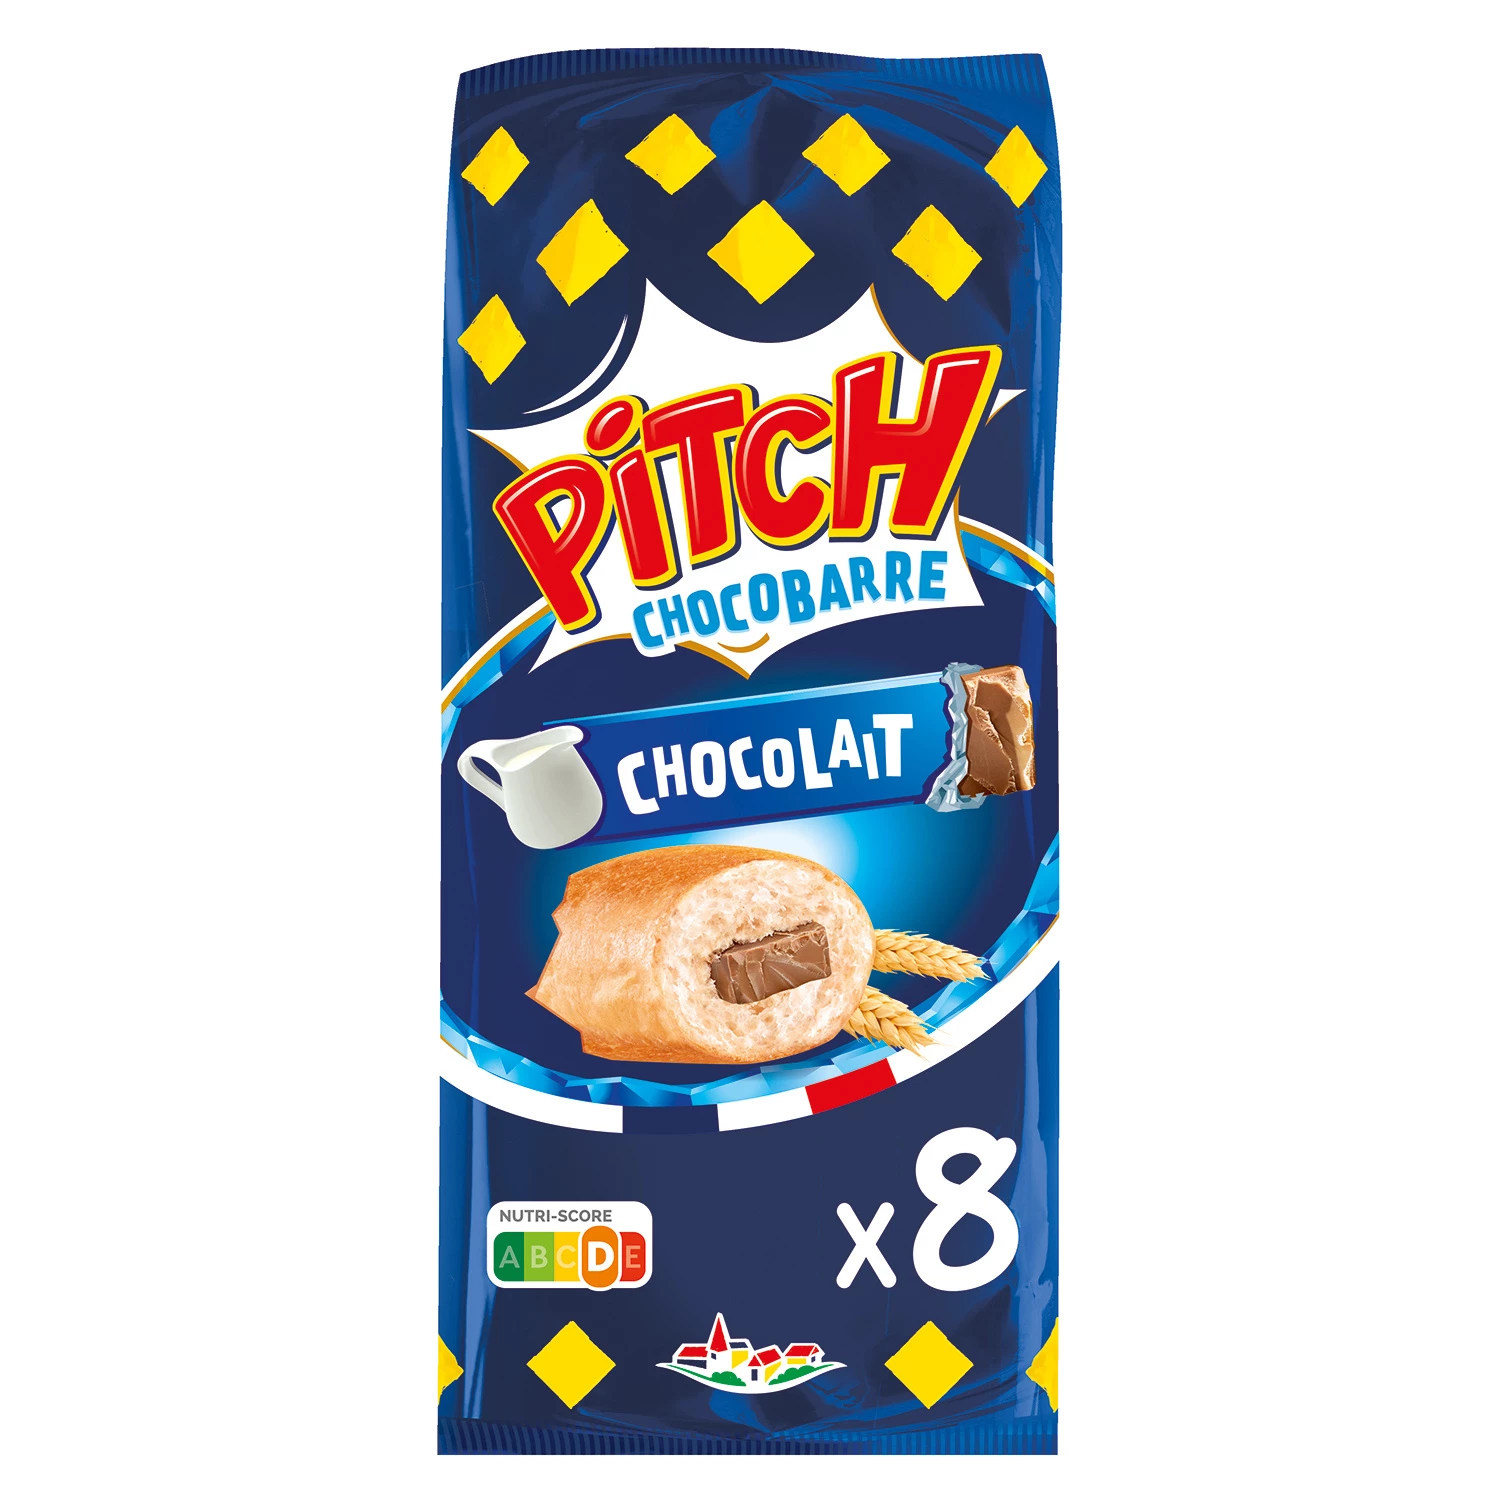 Pitch Brio Choc Bar Milk X8 30